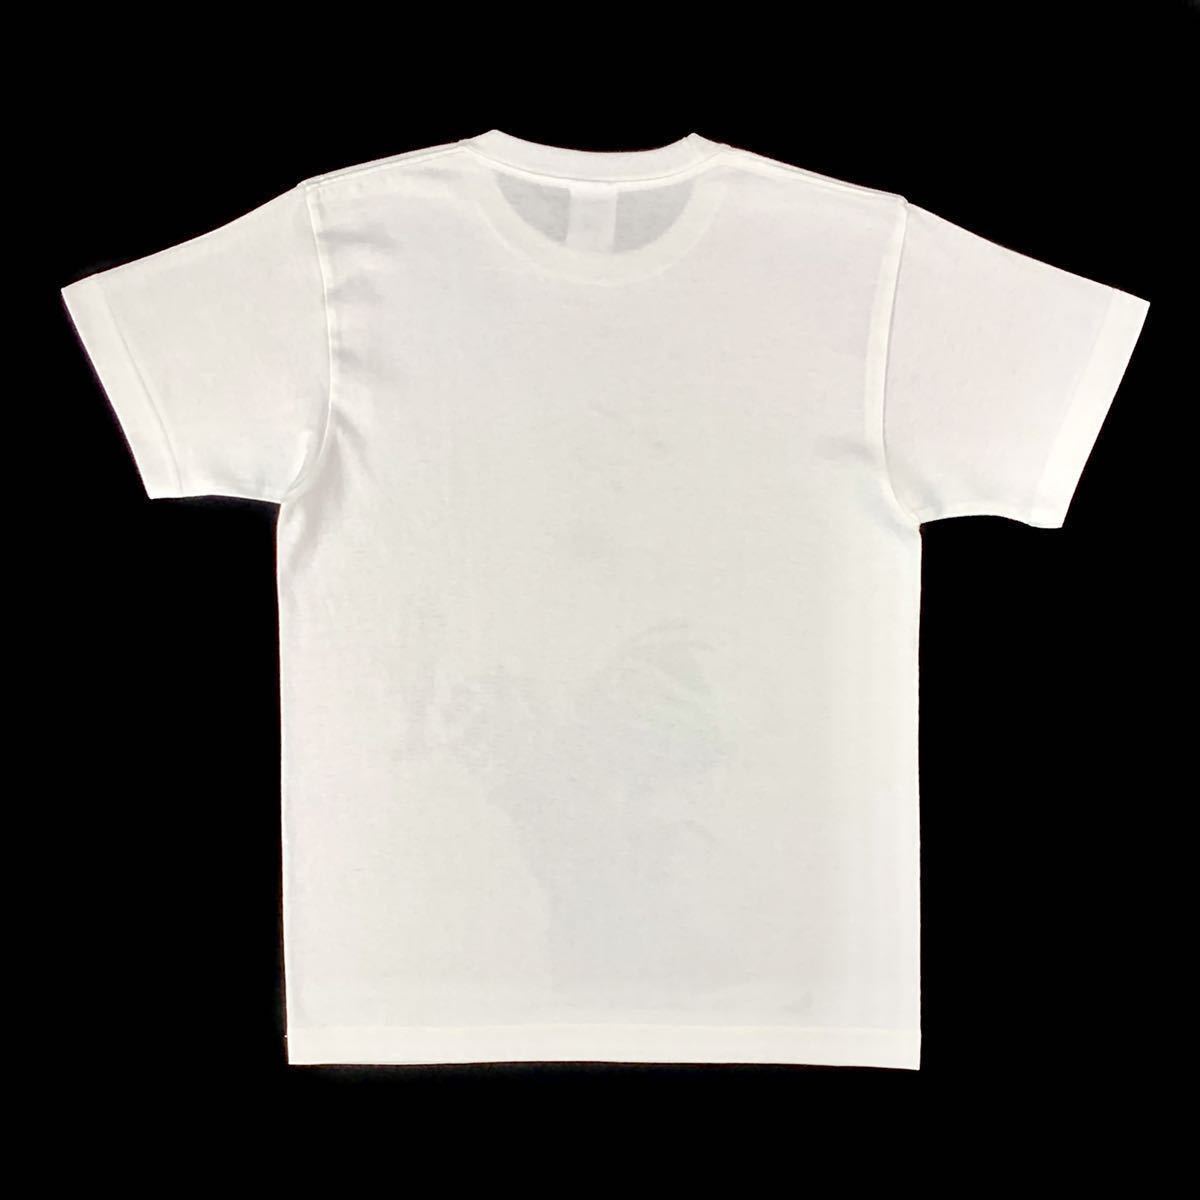 新品 マリリンモンロー アメリカ セックスシンボル セクシーブロンド 手ブラ ビッグプリント Tシャツ Sサイズ 小さいタイト スリムフィット